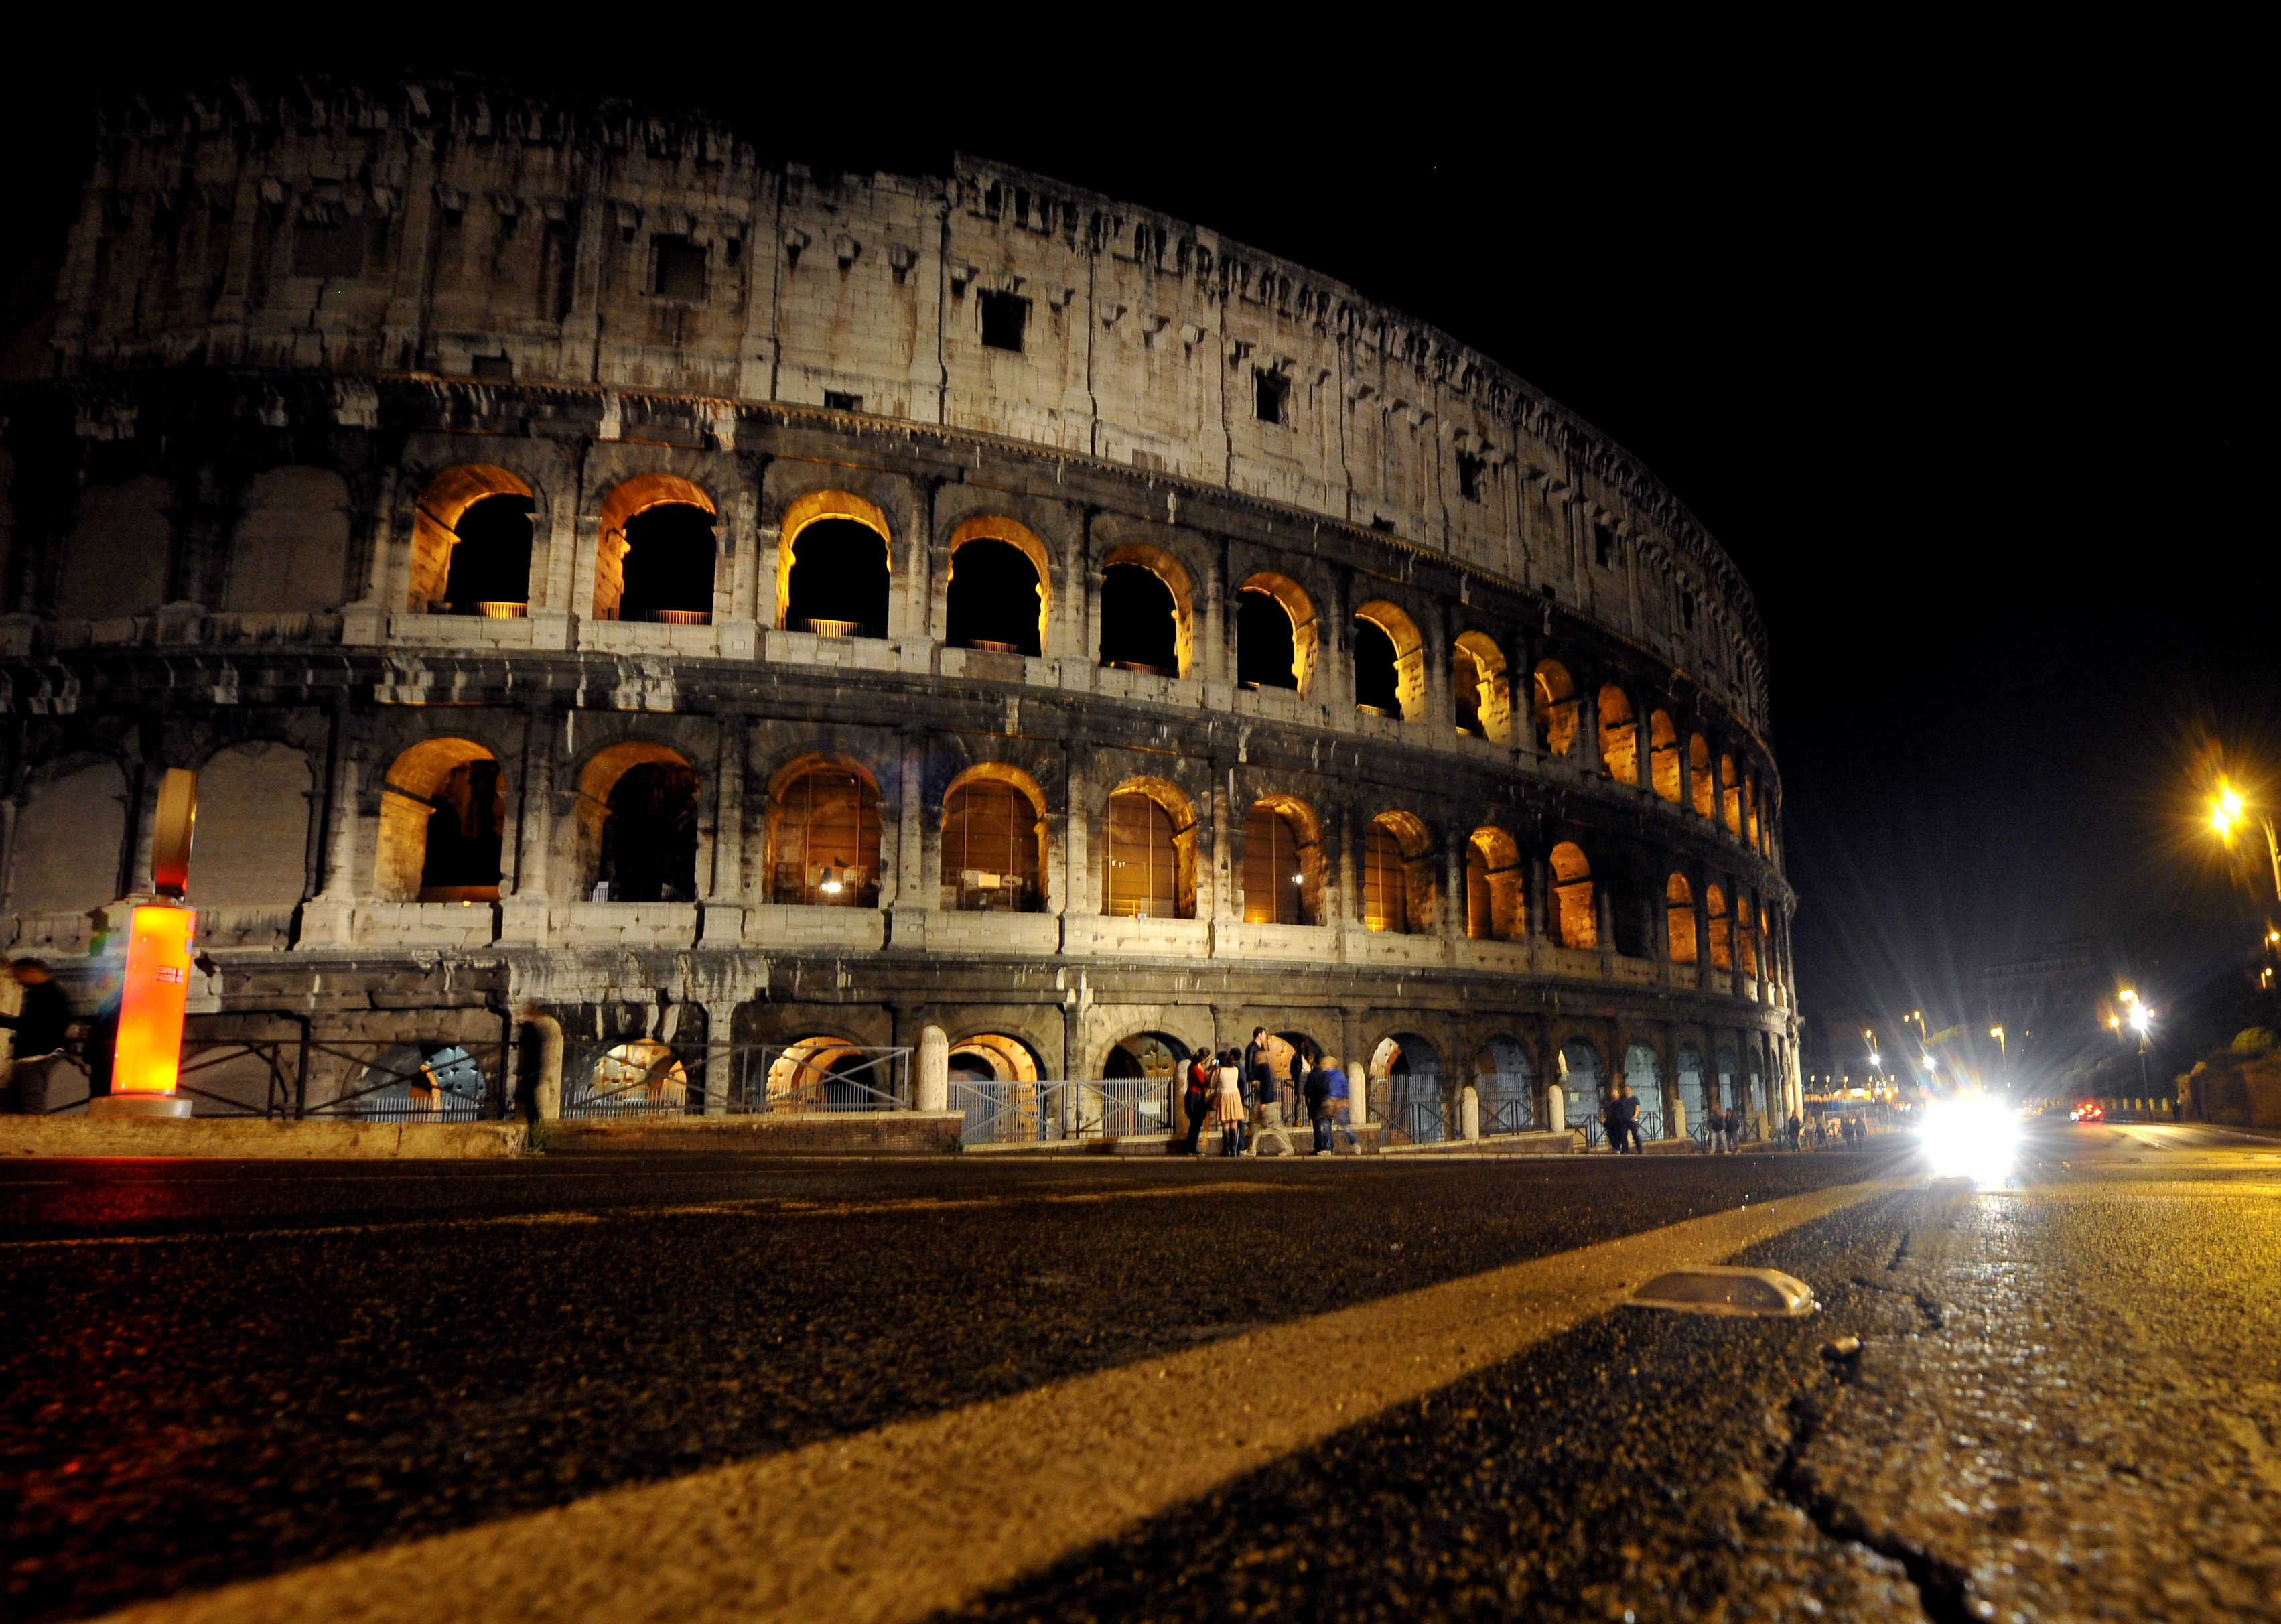 Rubano un pezzo del Colosseo: denunciati quattro ragazzi canadesi